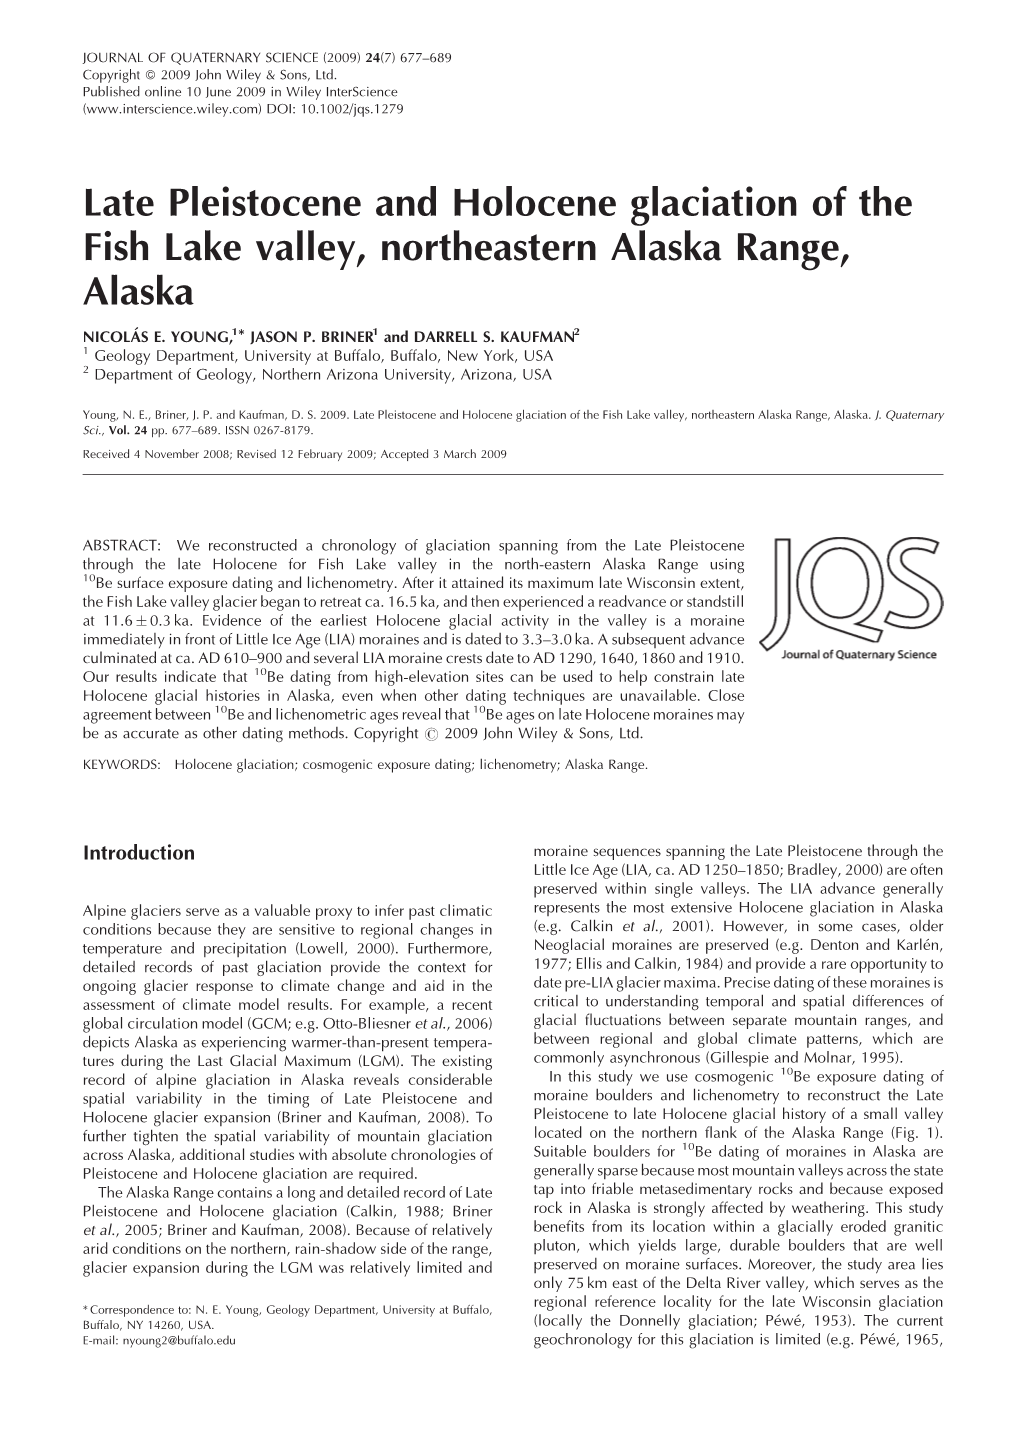 Late Pleistocene and Holocene Glaciation of the Fish Lake Valley, Northeastern Alaska Range, Alaska